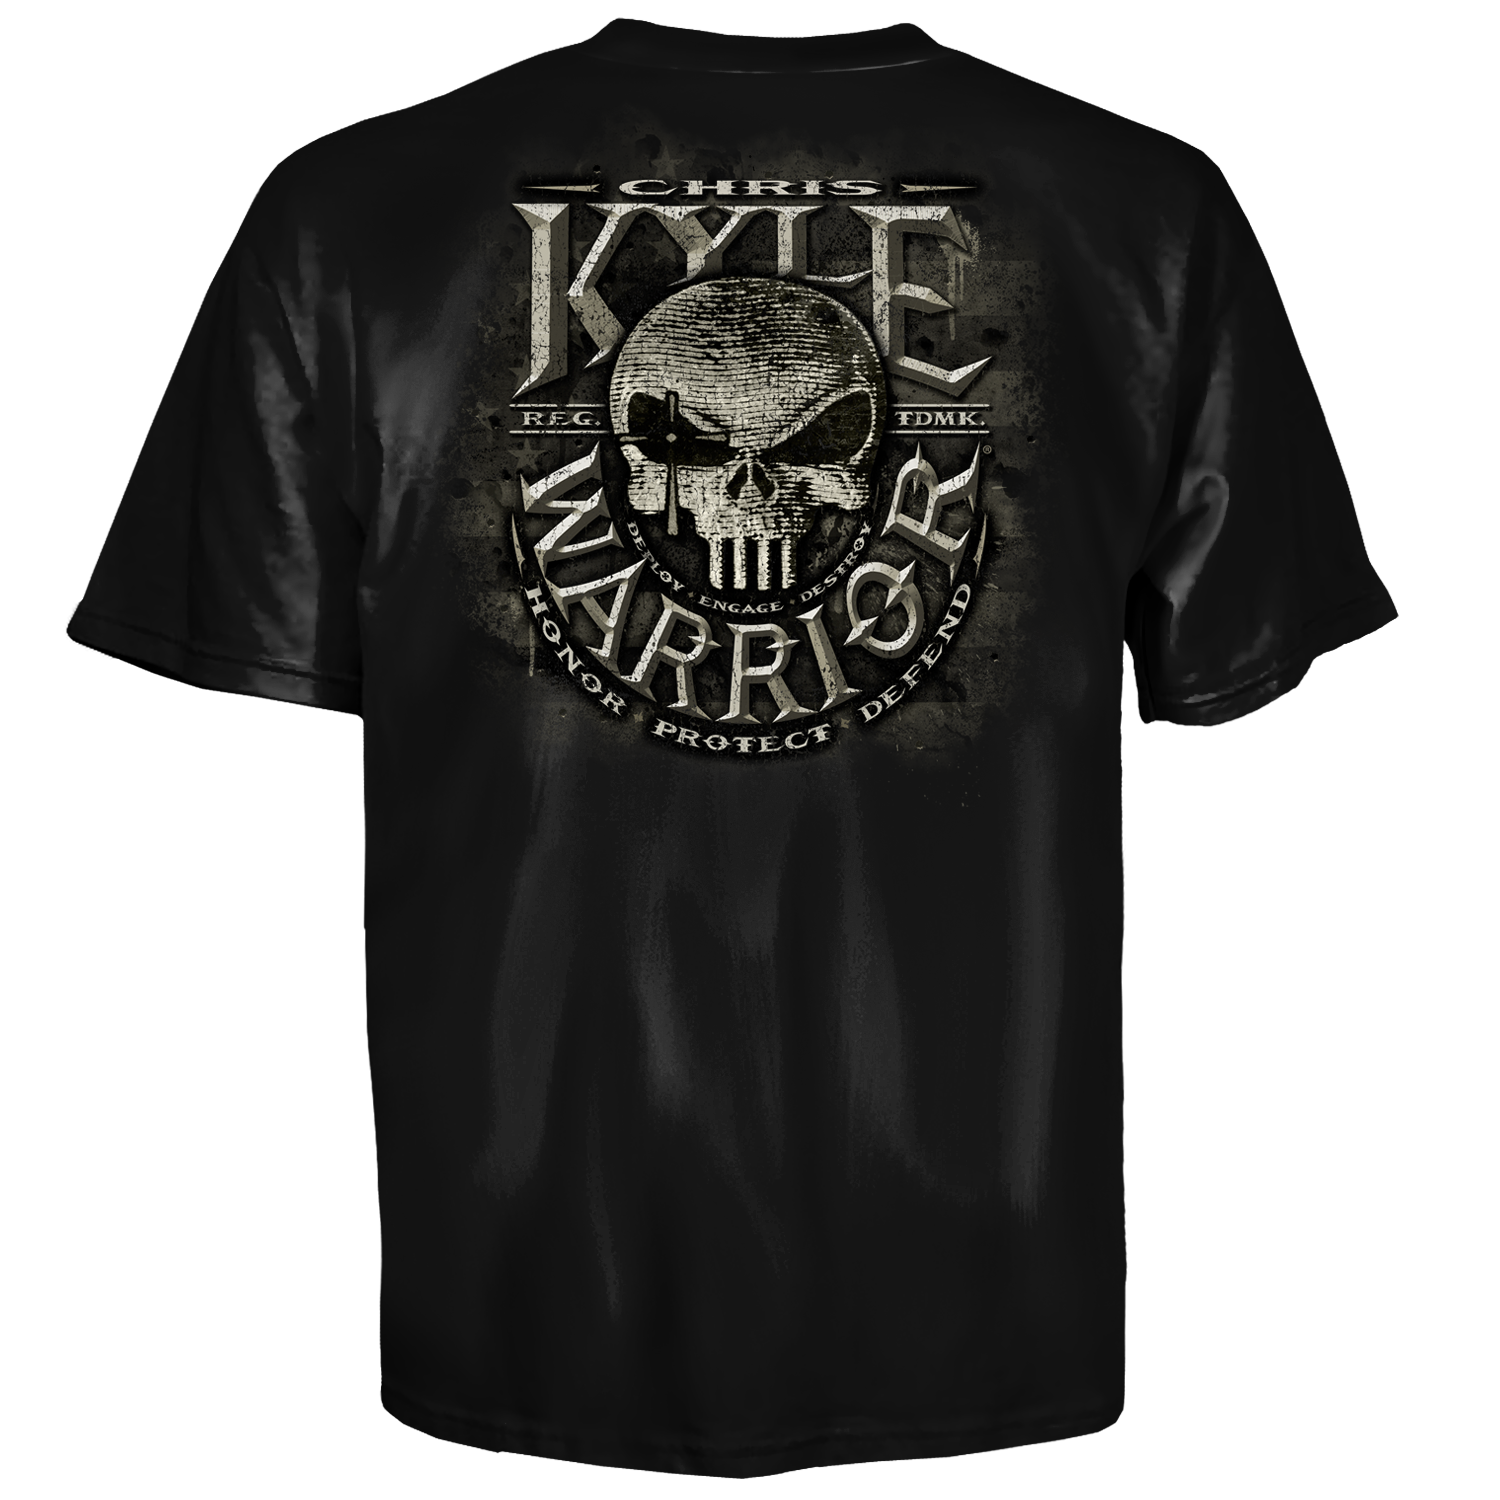 Chris Kyle Frog Foundation Deploy Engage Destroy Skull Warrior T Shirt ...